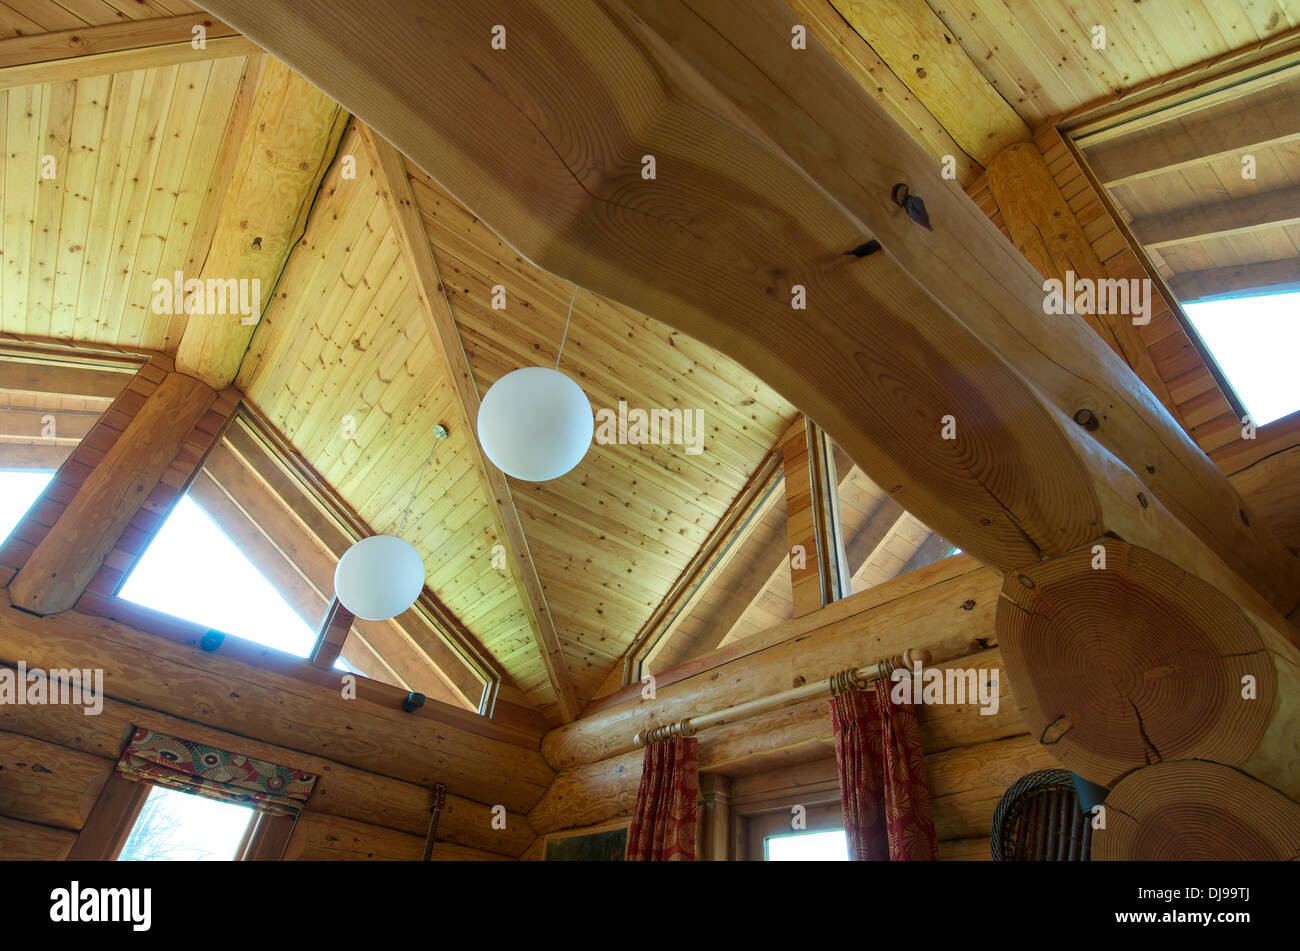 Plafond de l'éco Log Cabin, Shrophsire, UK Banque D'Images